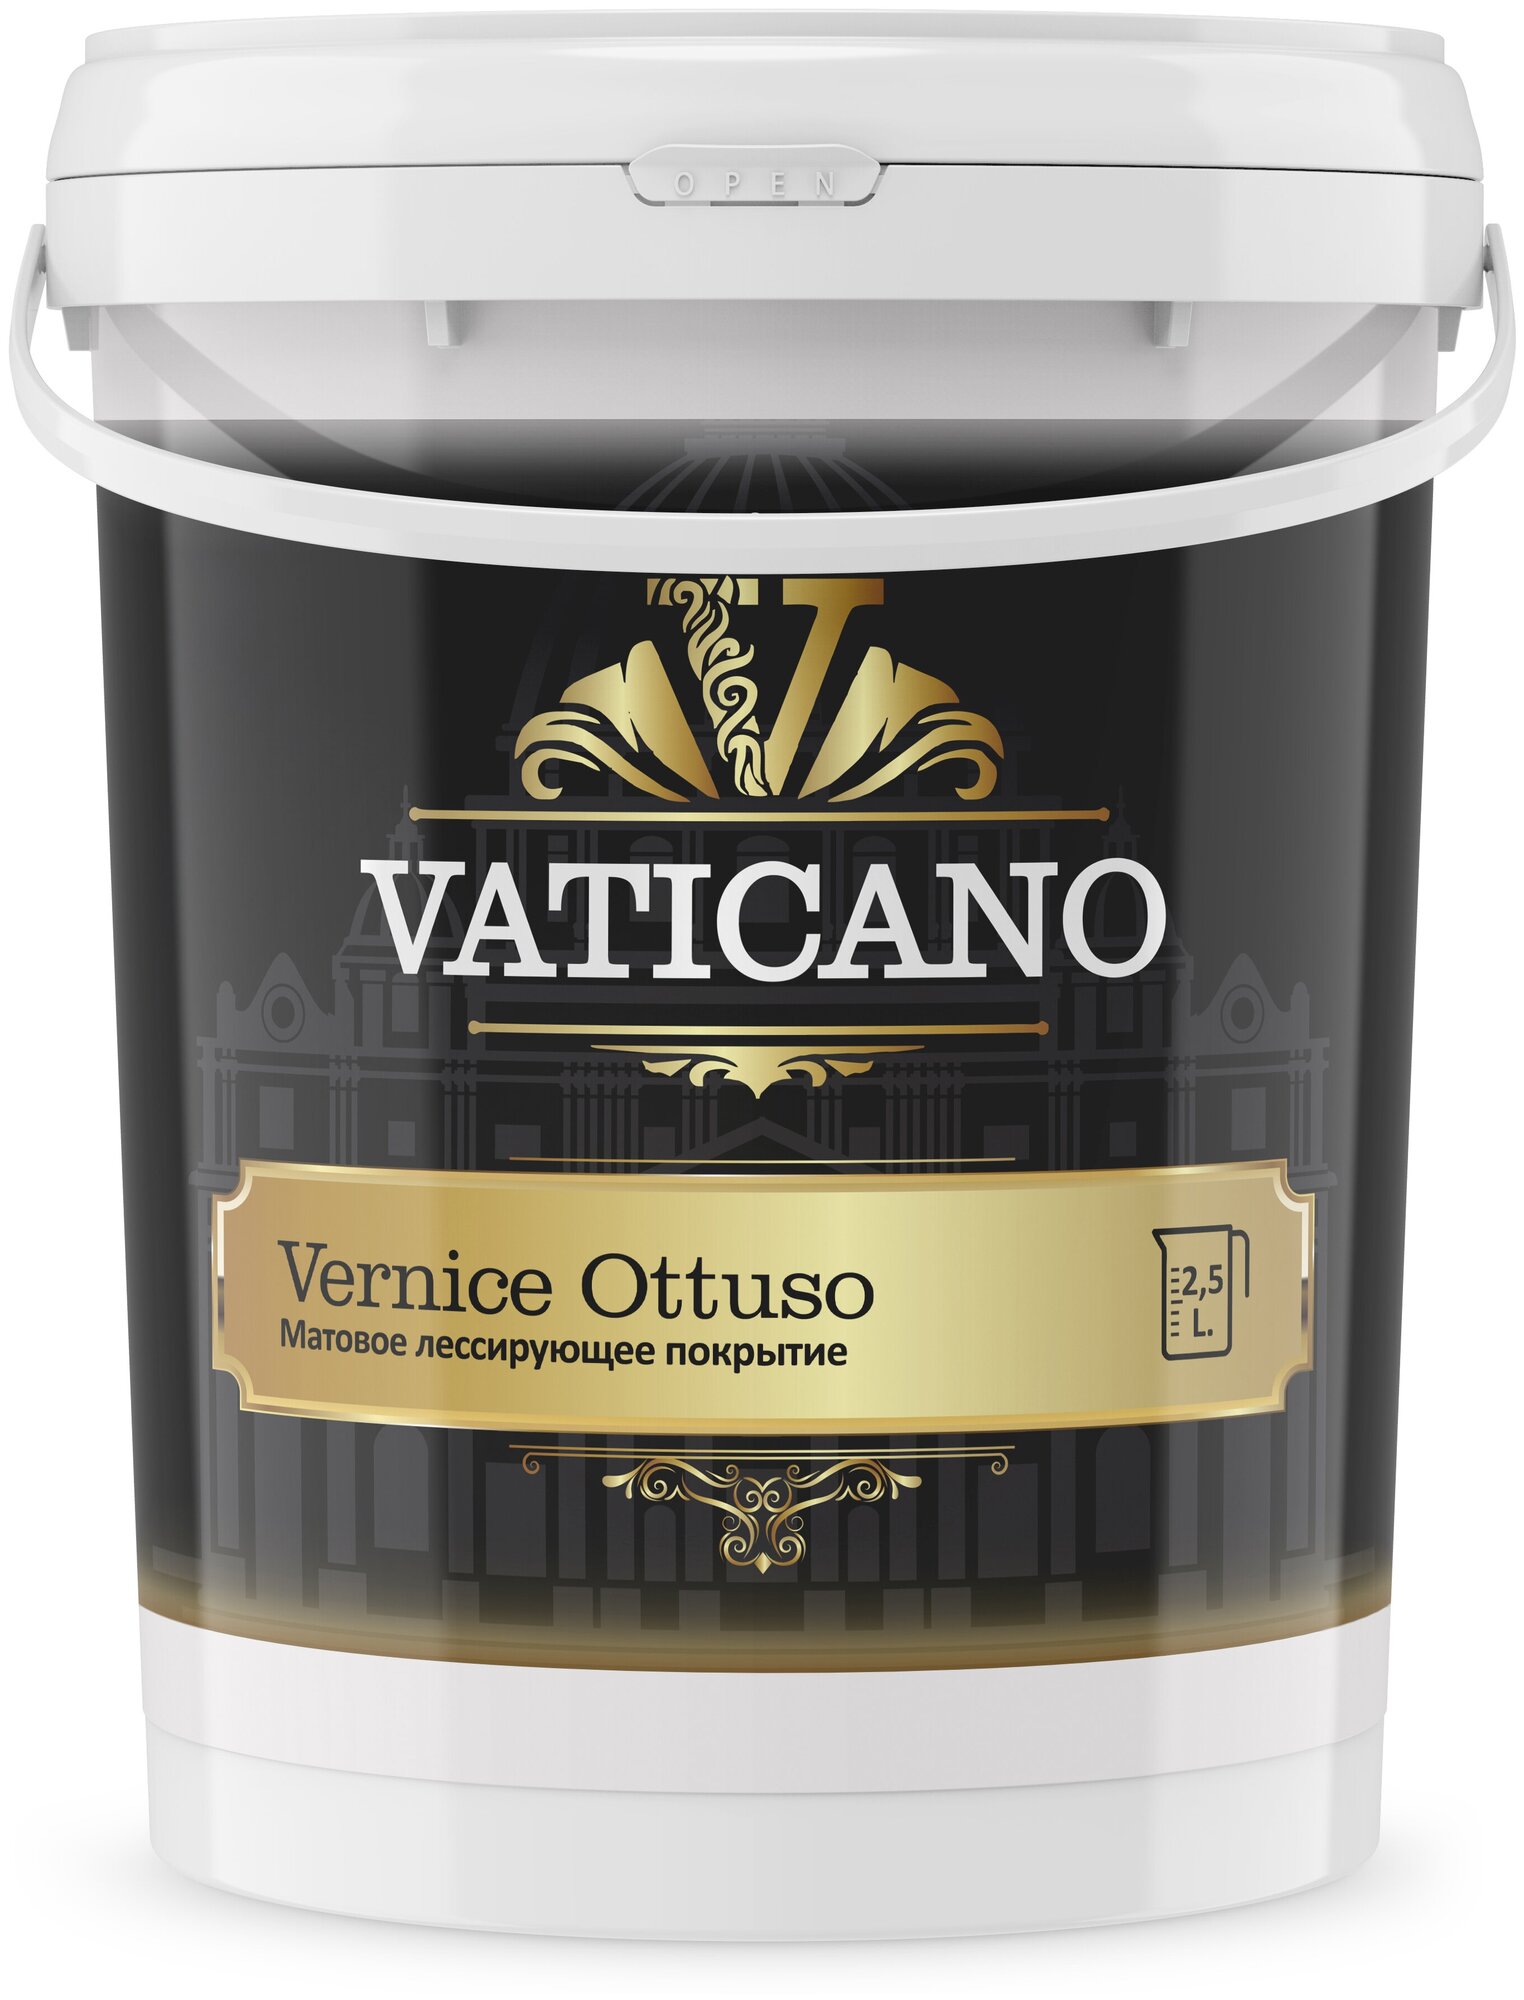 Финишное защитное покрытие VATICANO Vernice Ottuso 2.5 л, матовое лессирующее покрытие для стен.